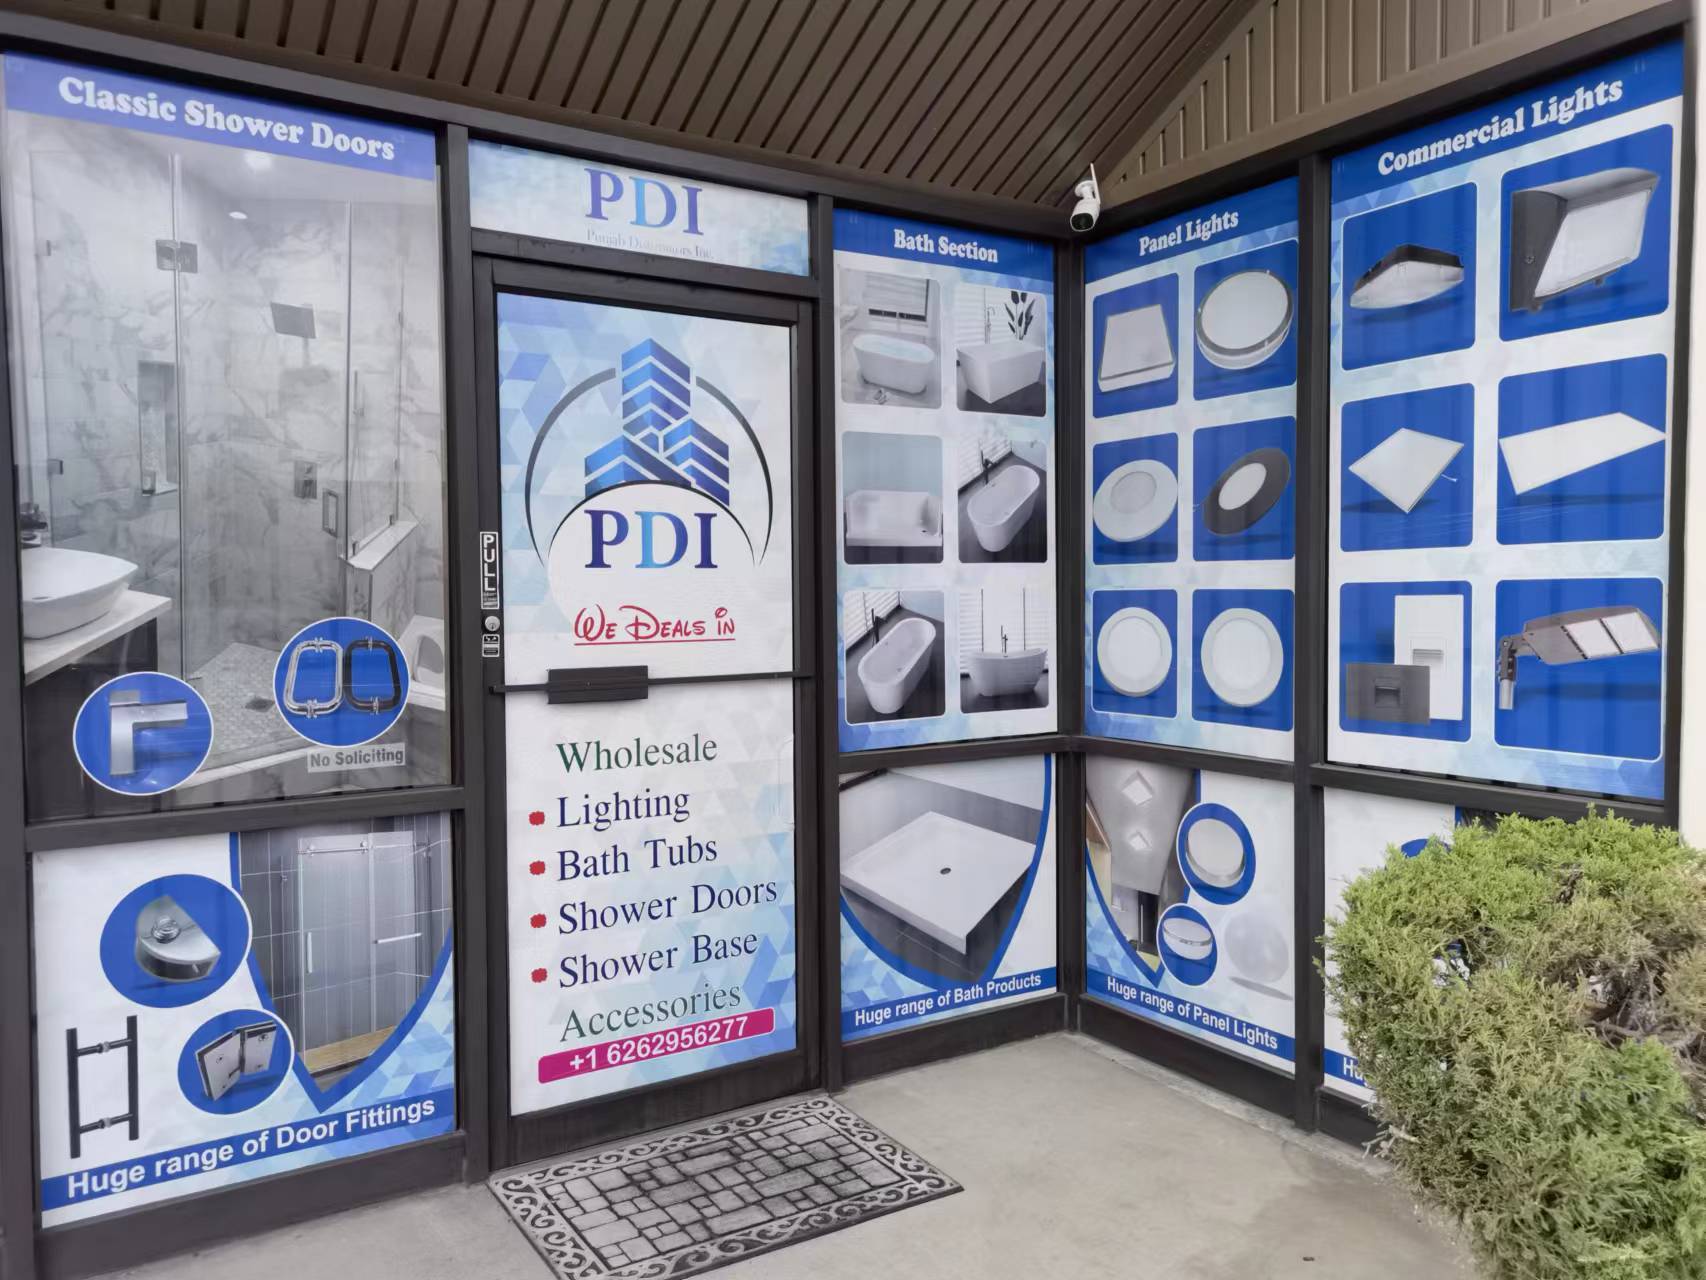  我们PDI玻璃浴門和五金公司，批发各类淋浴门和五金，价格便宜，欢迎选购！